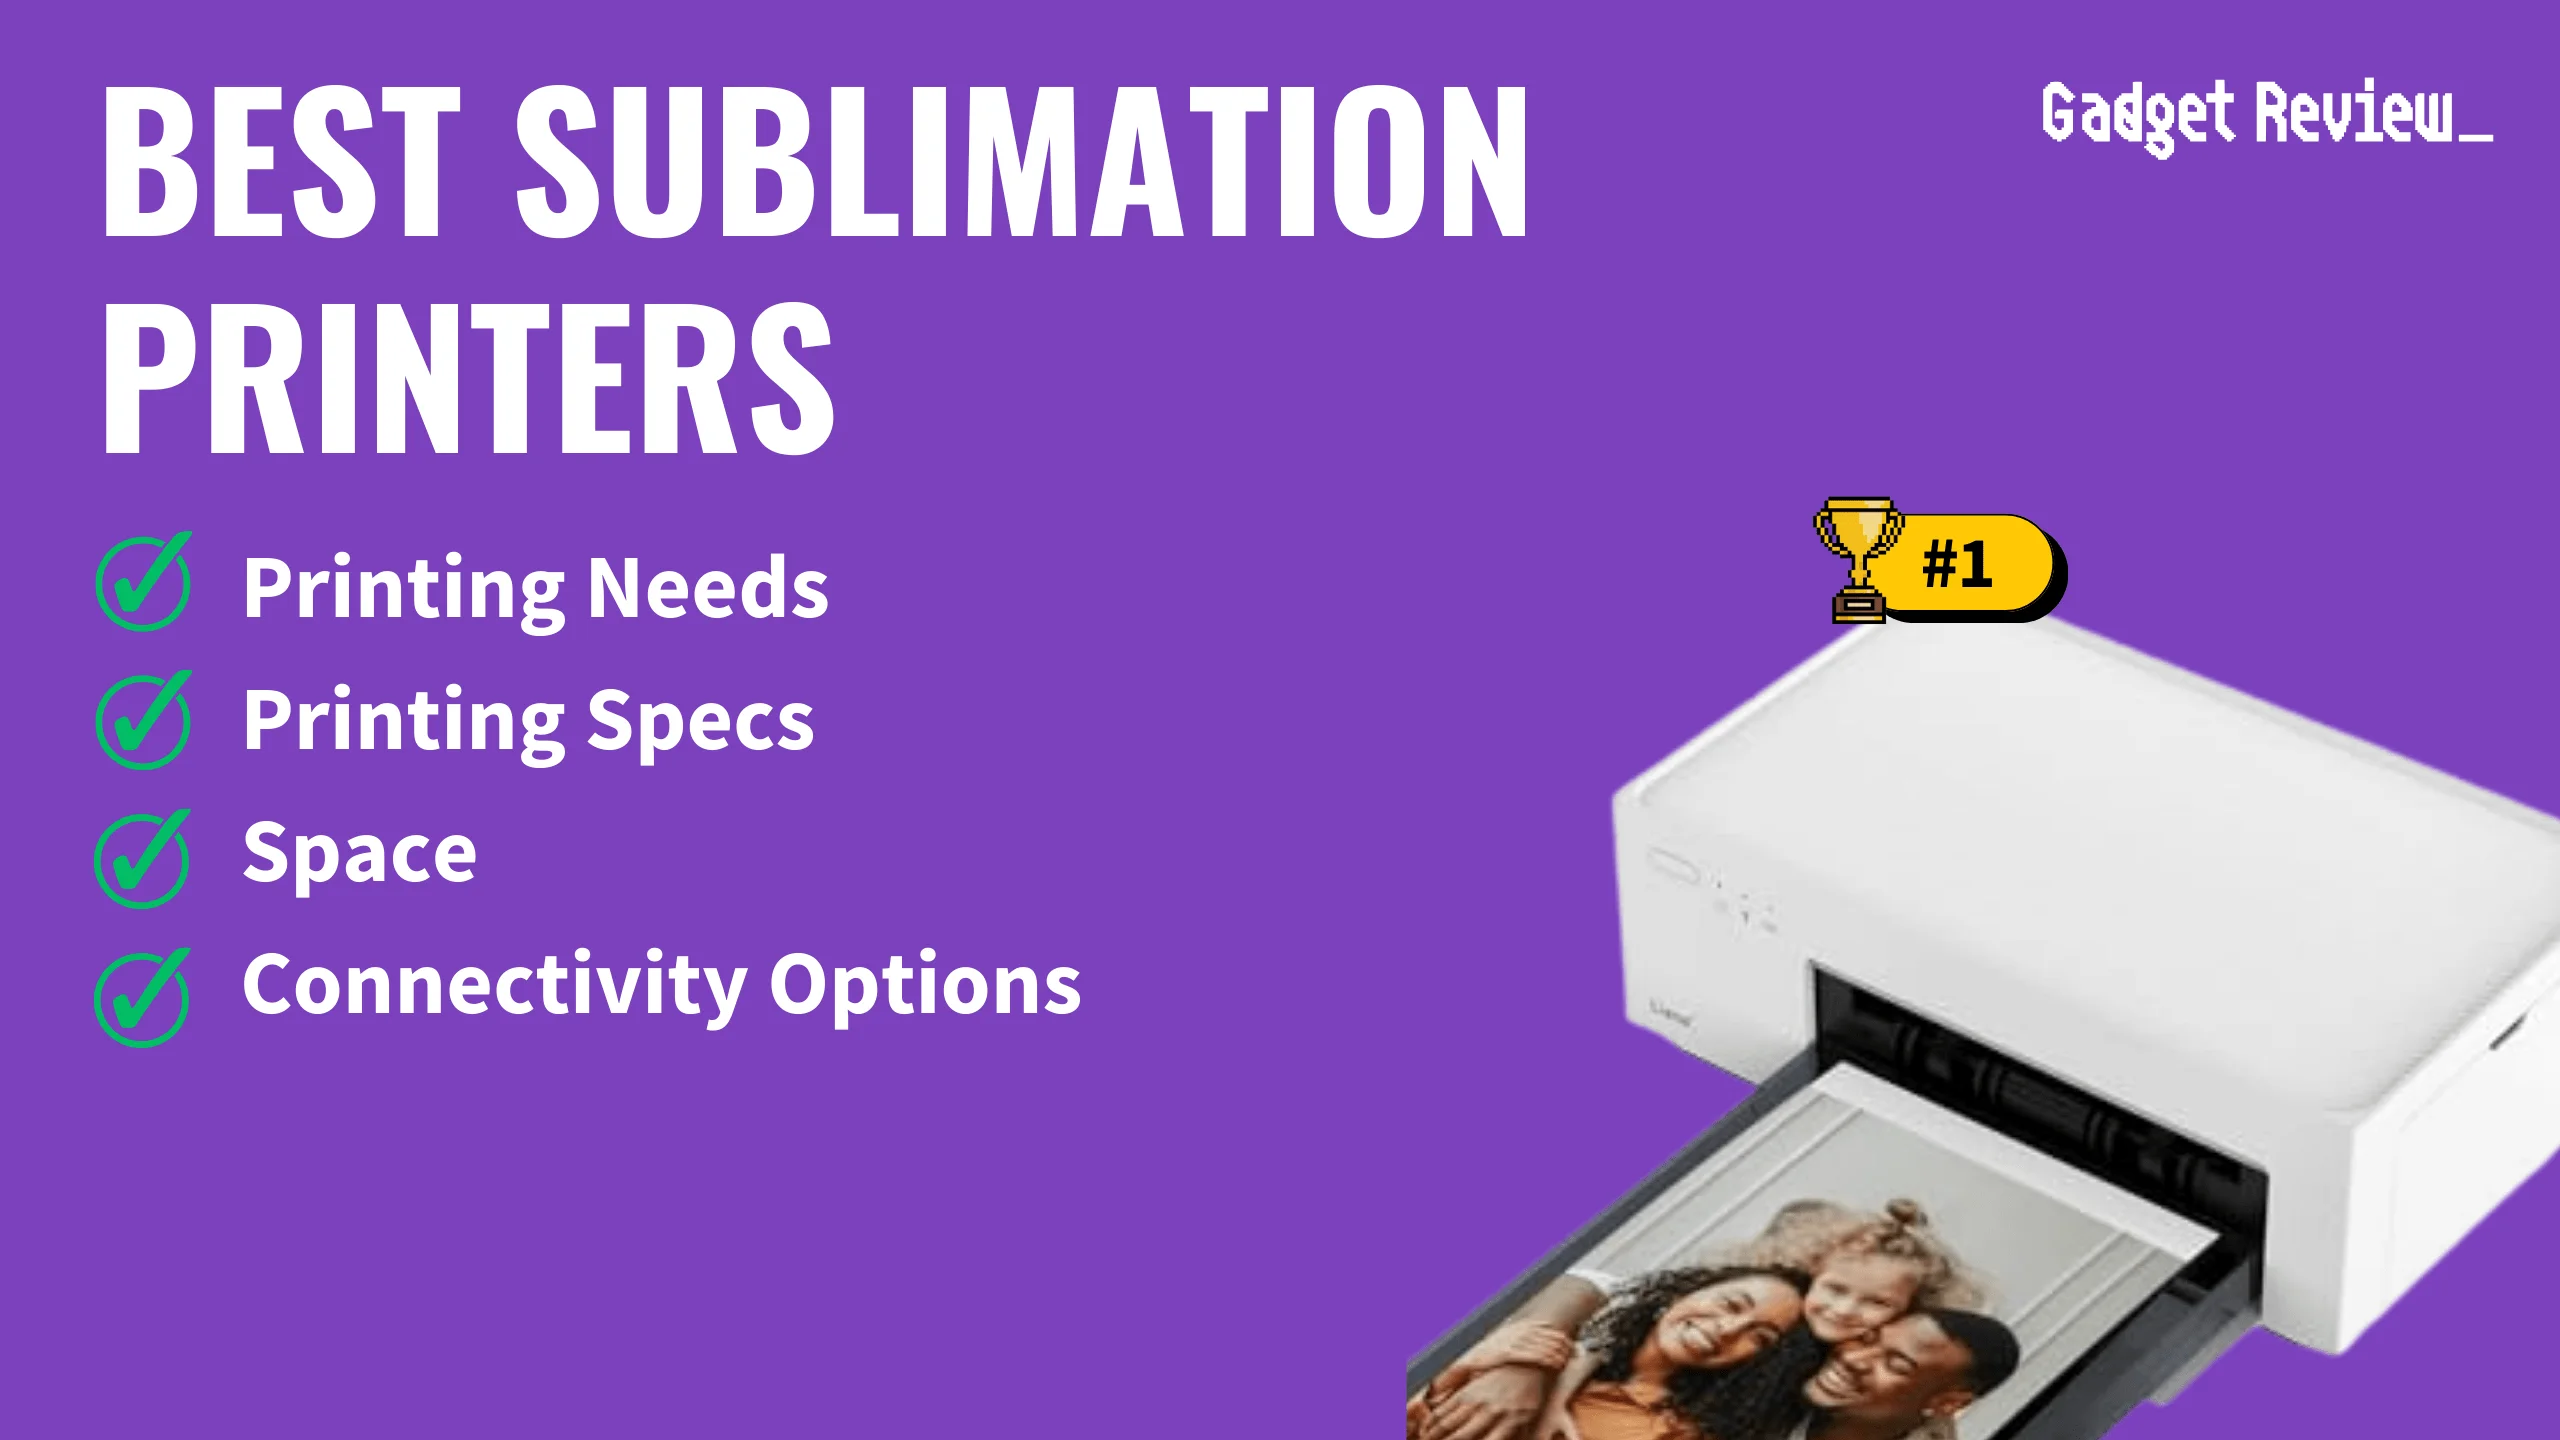 Best Sublimation Printers